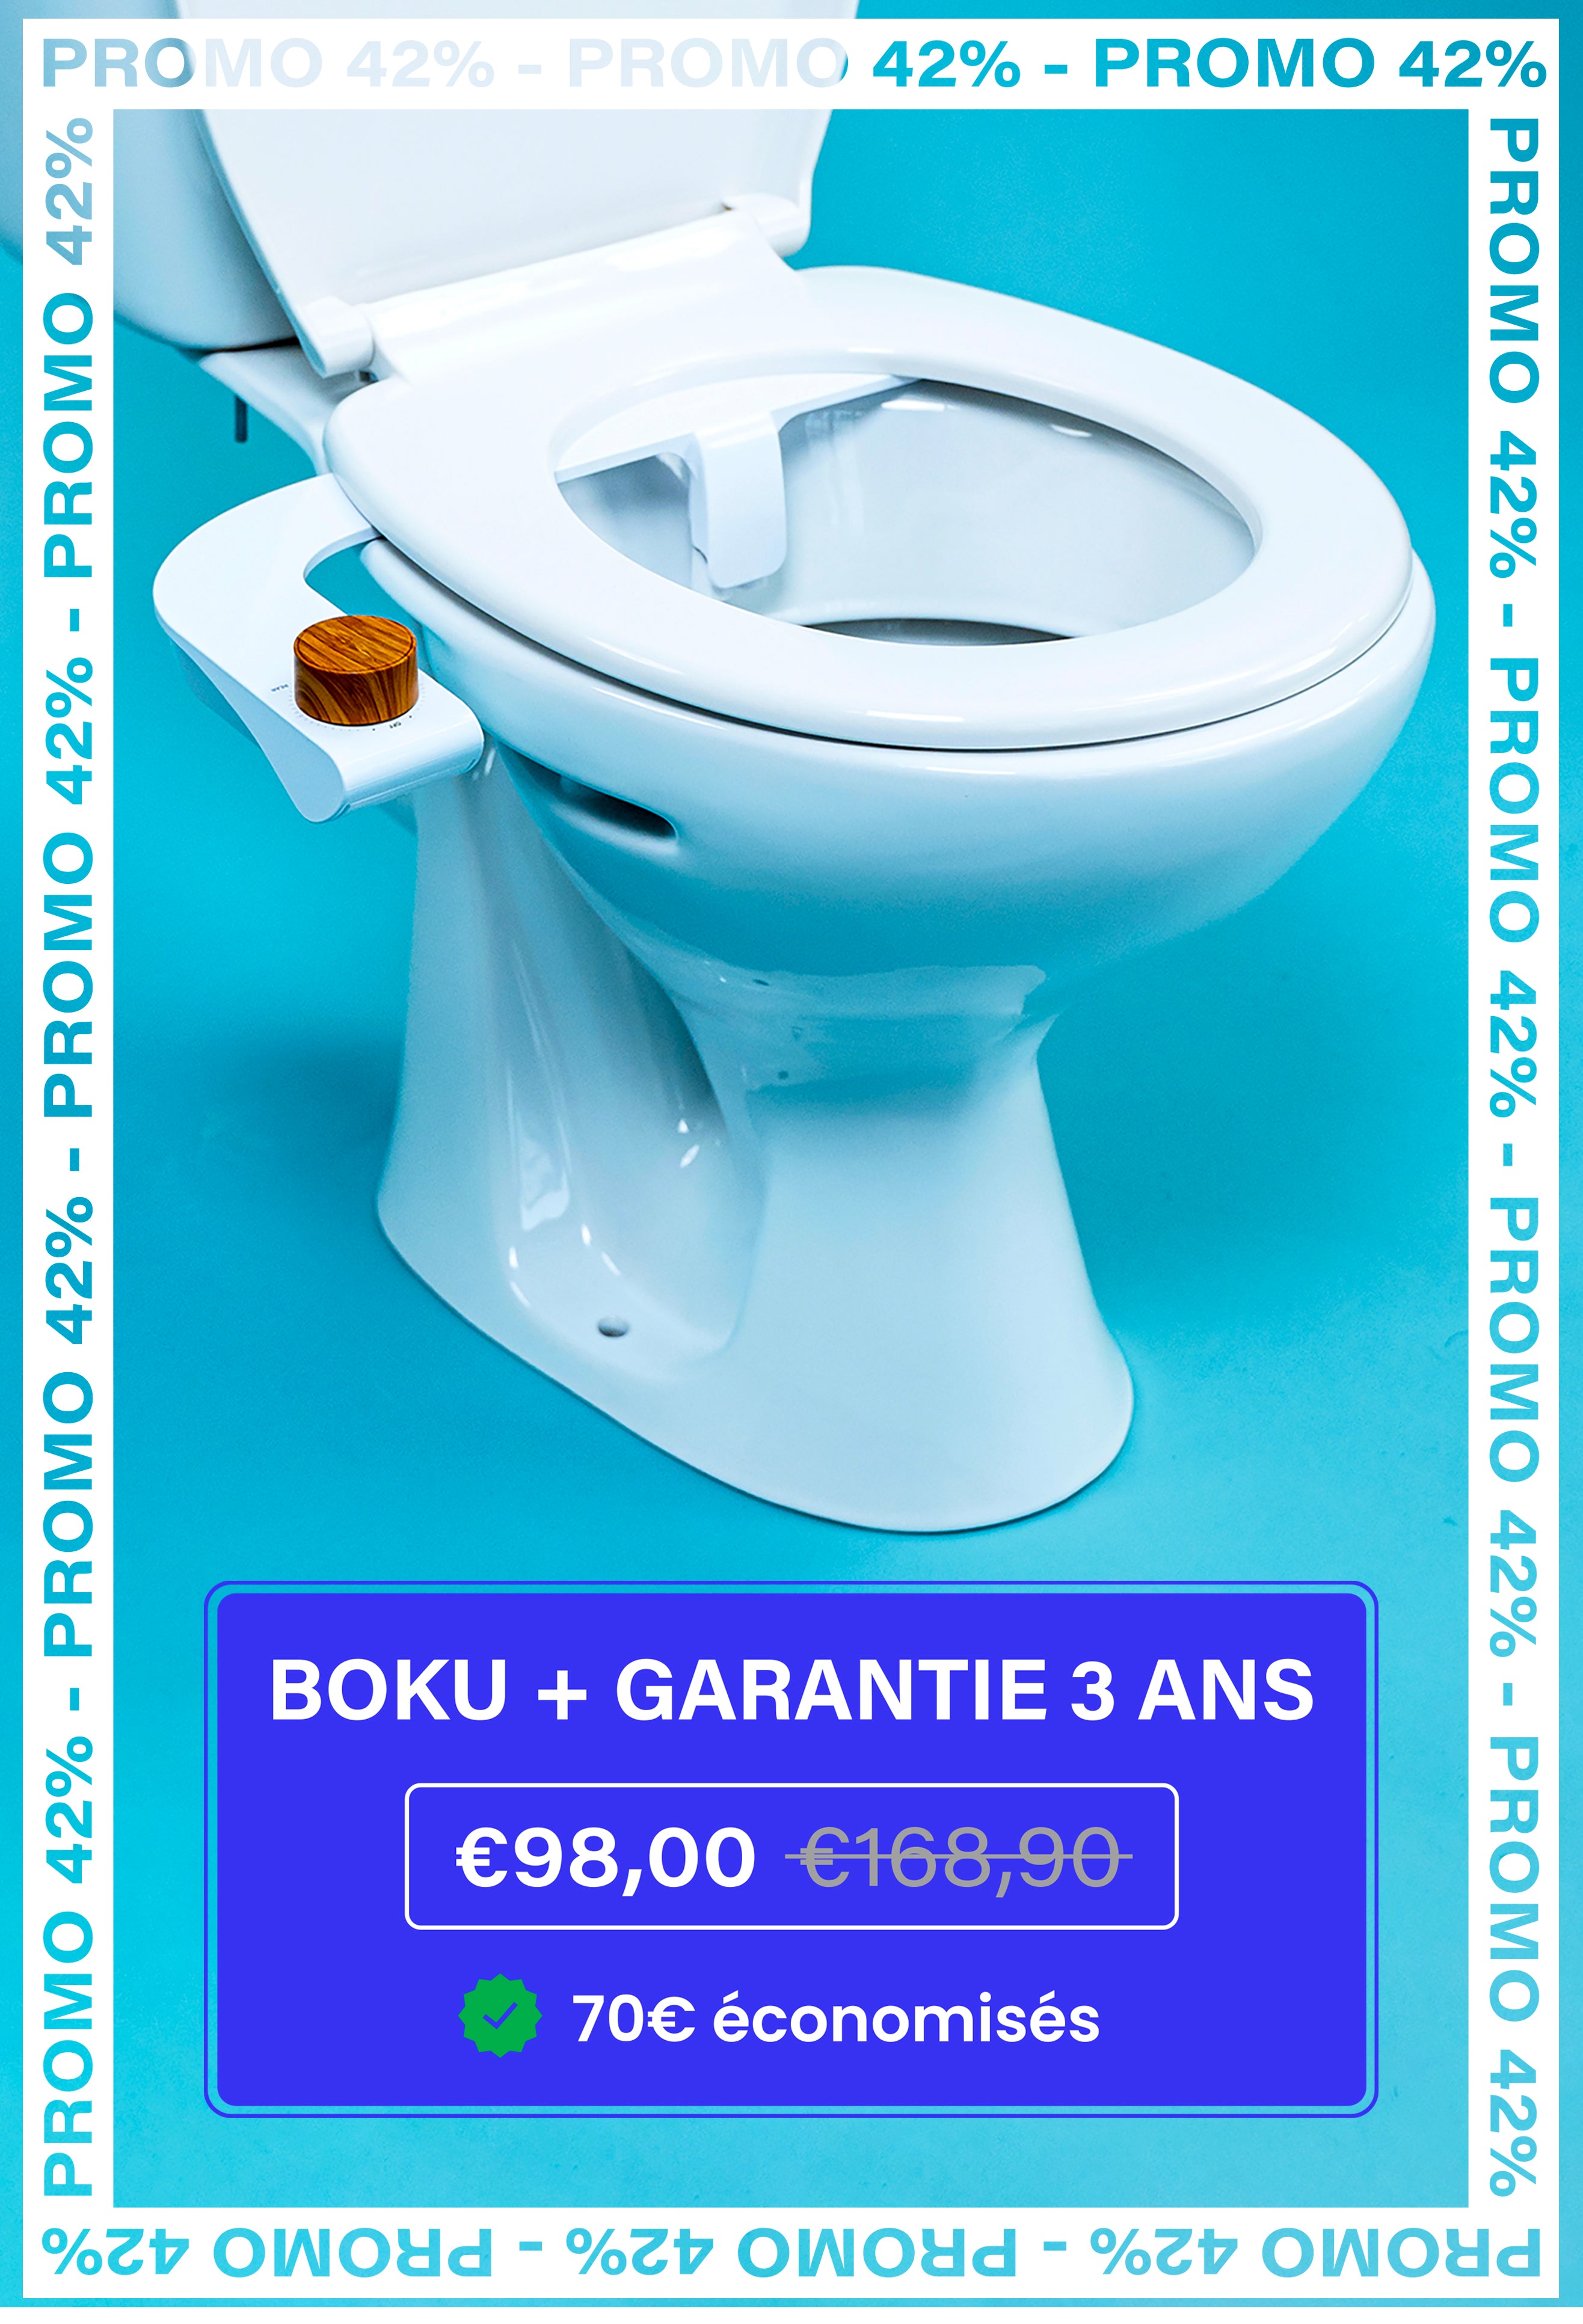 Boku toilette japonaise : fonctionnement, prix, avantages, avis des clients